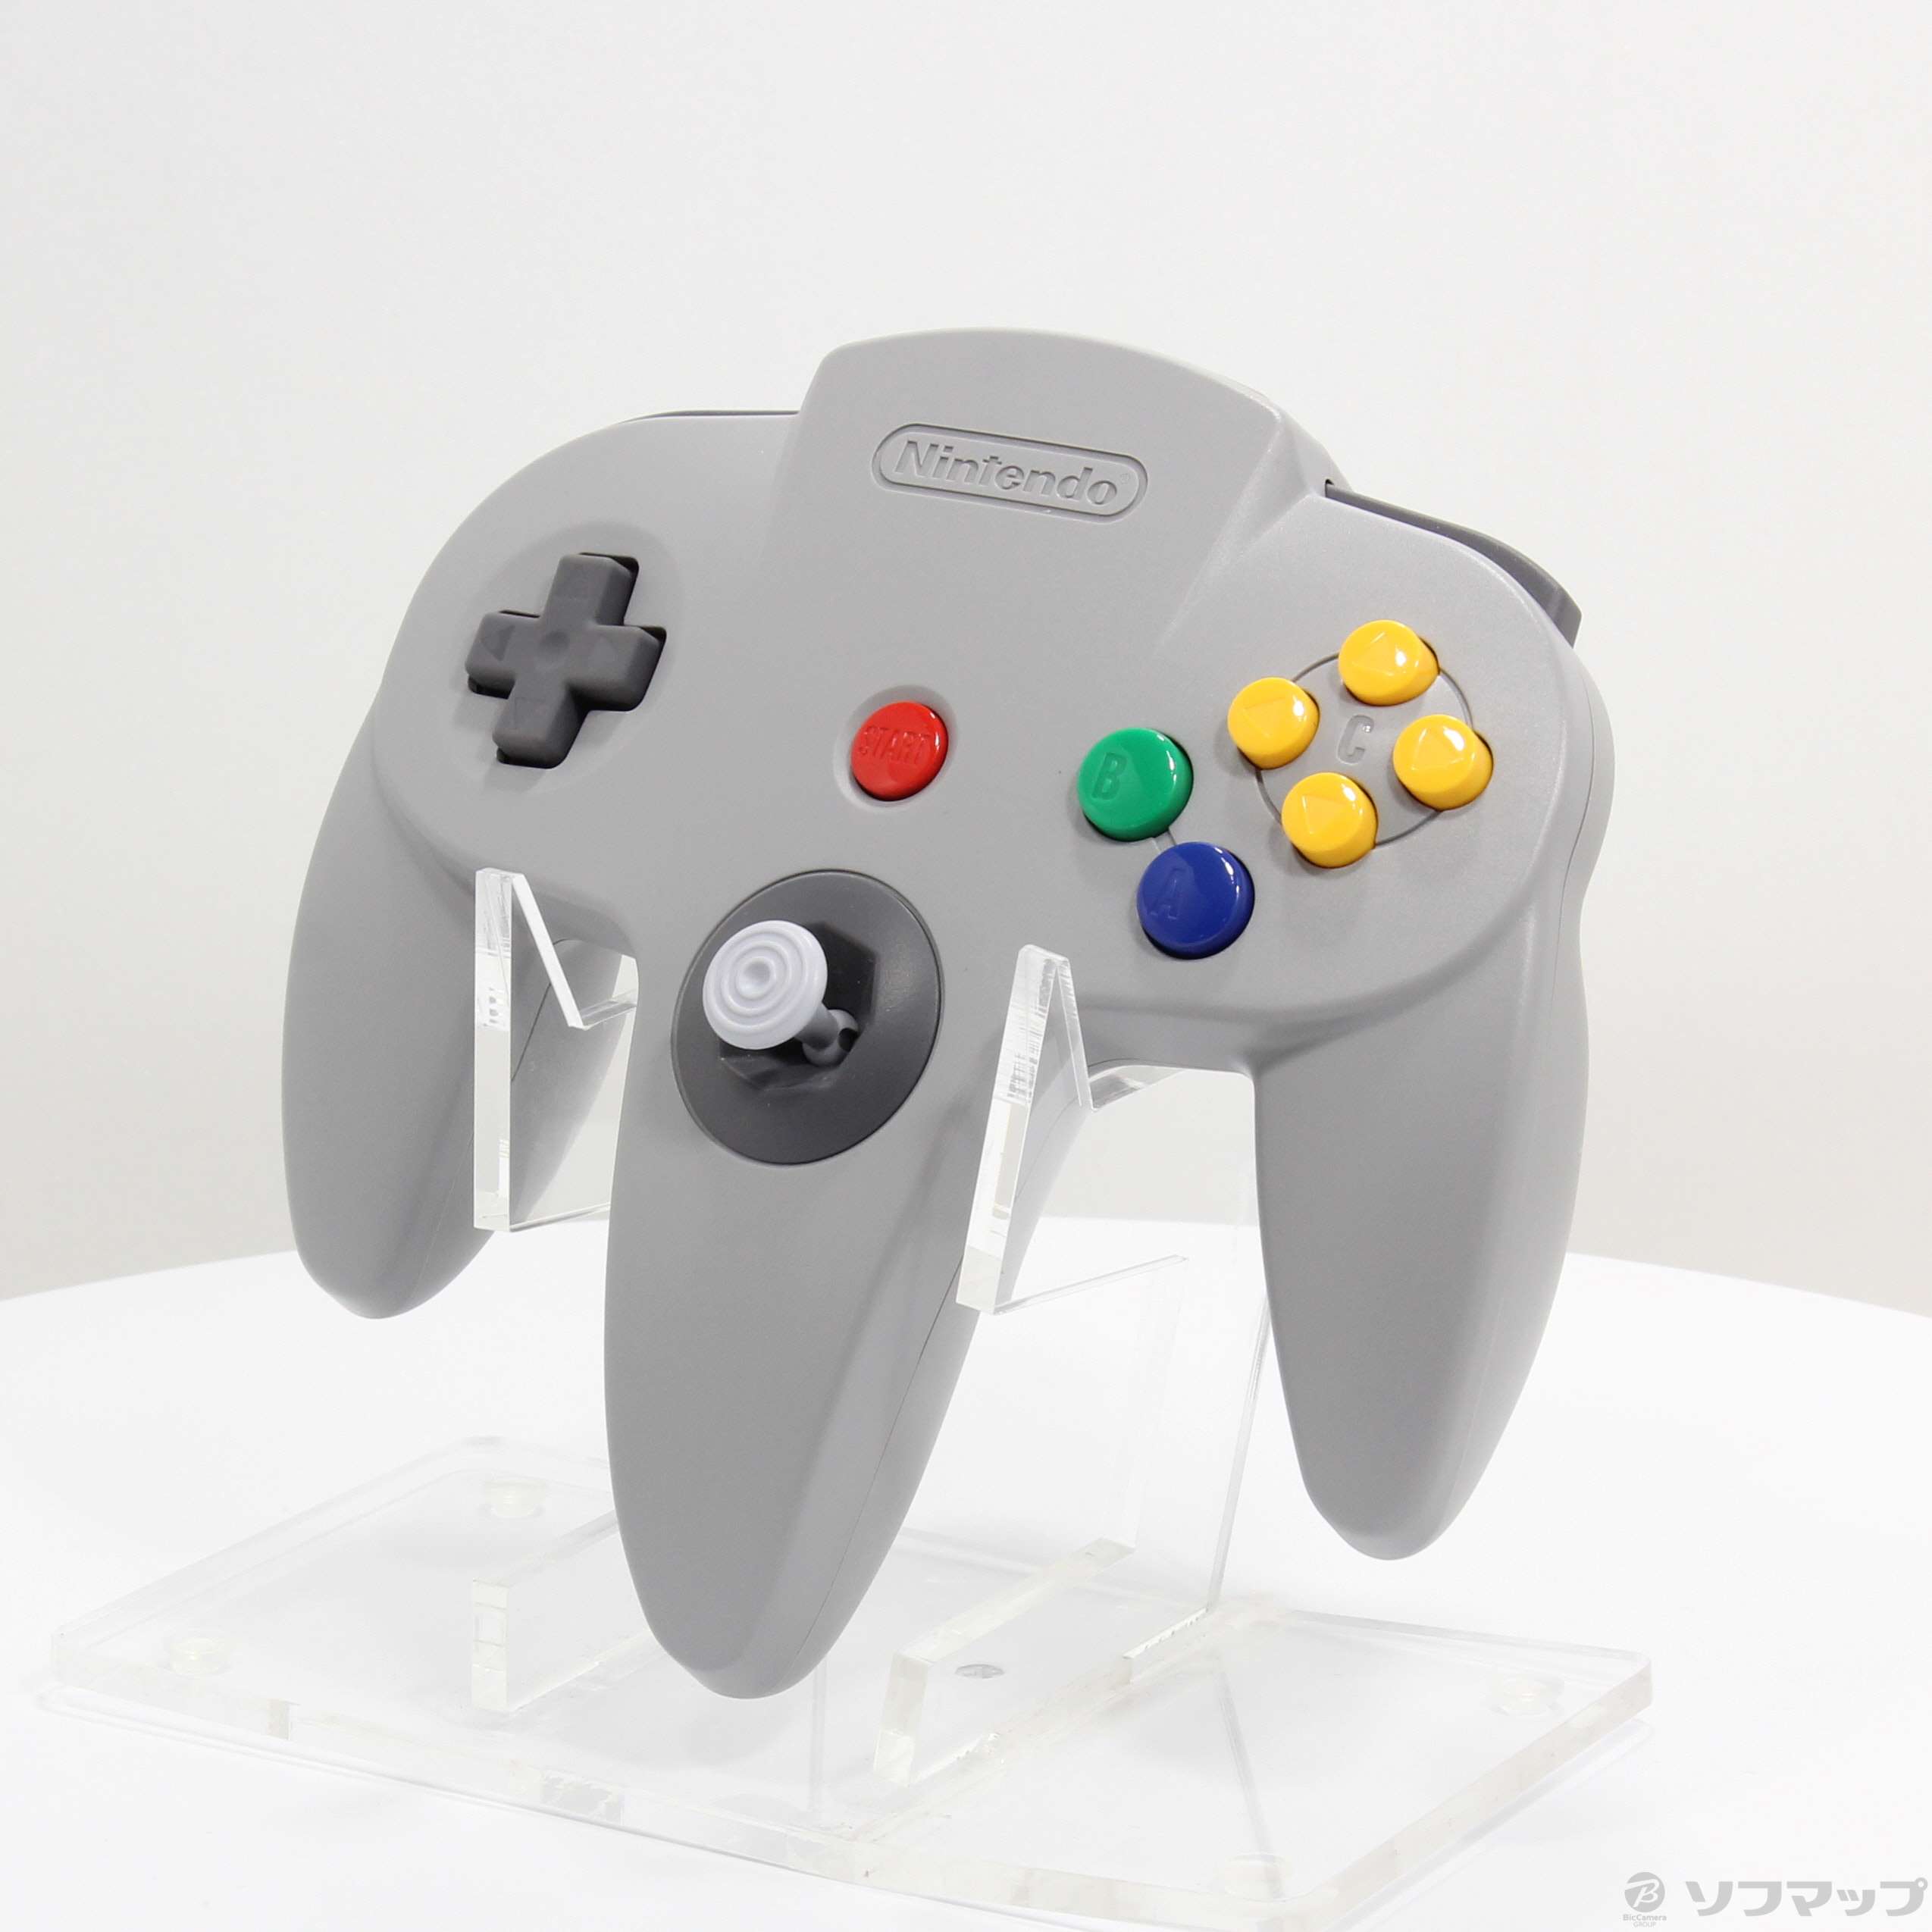 中古】NINTENDO 64 コントローラー 『NINTENDO 64 Nintendo Switch 